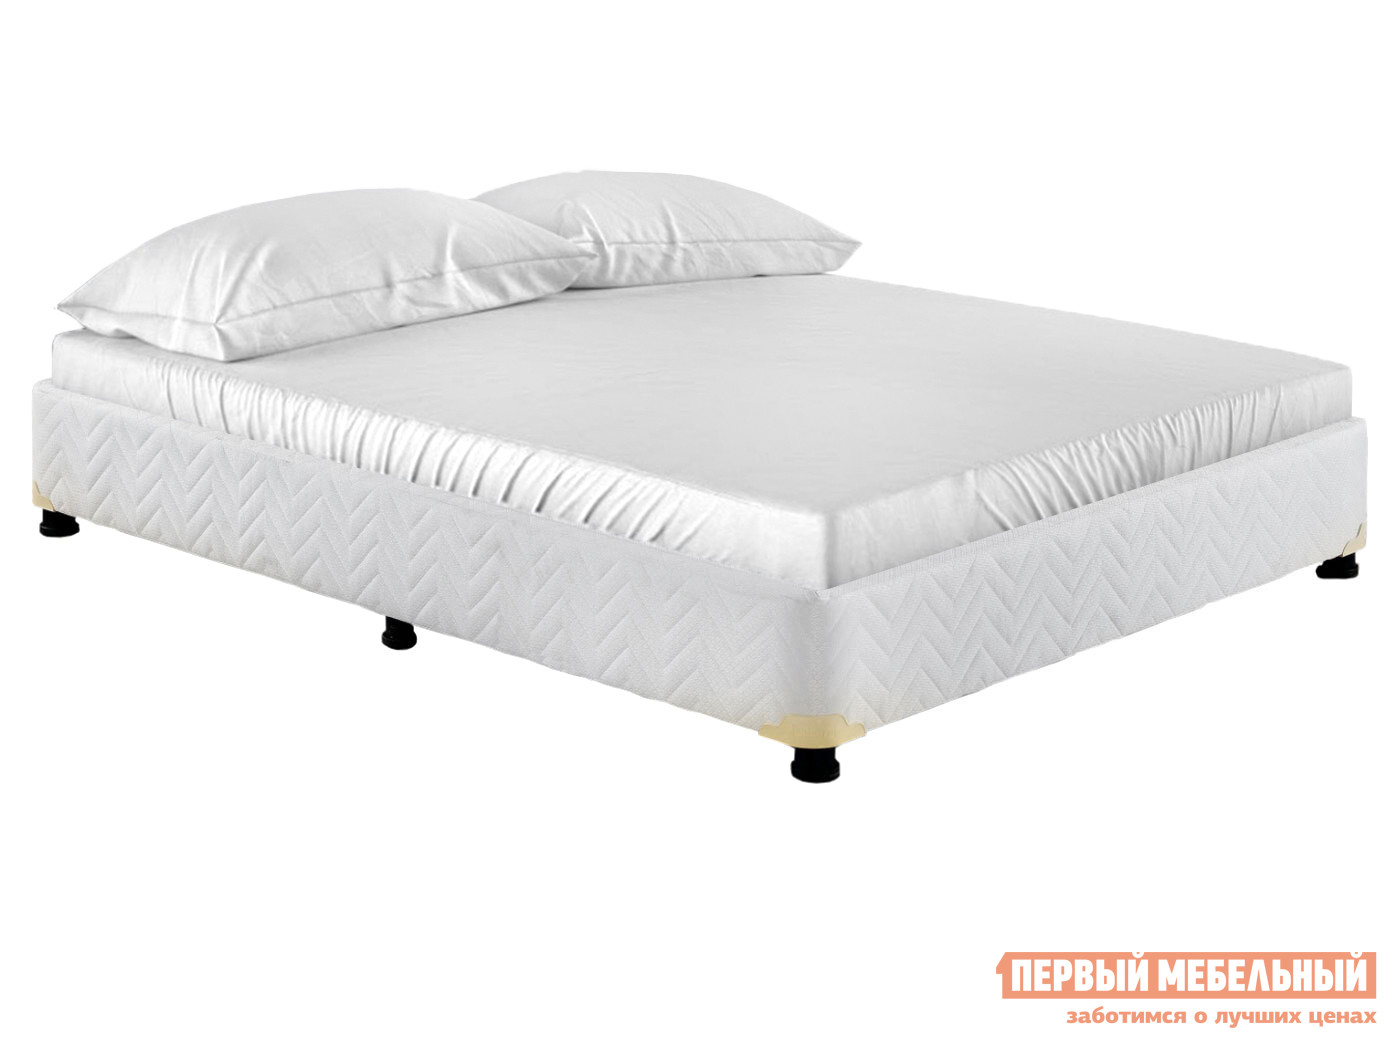 Односпальная кровать  База кровати универсал 900х200 / 120х200 Белый, 900 Х 2000 мм